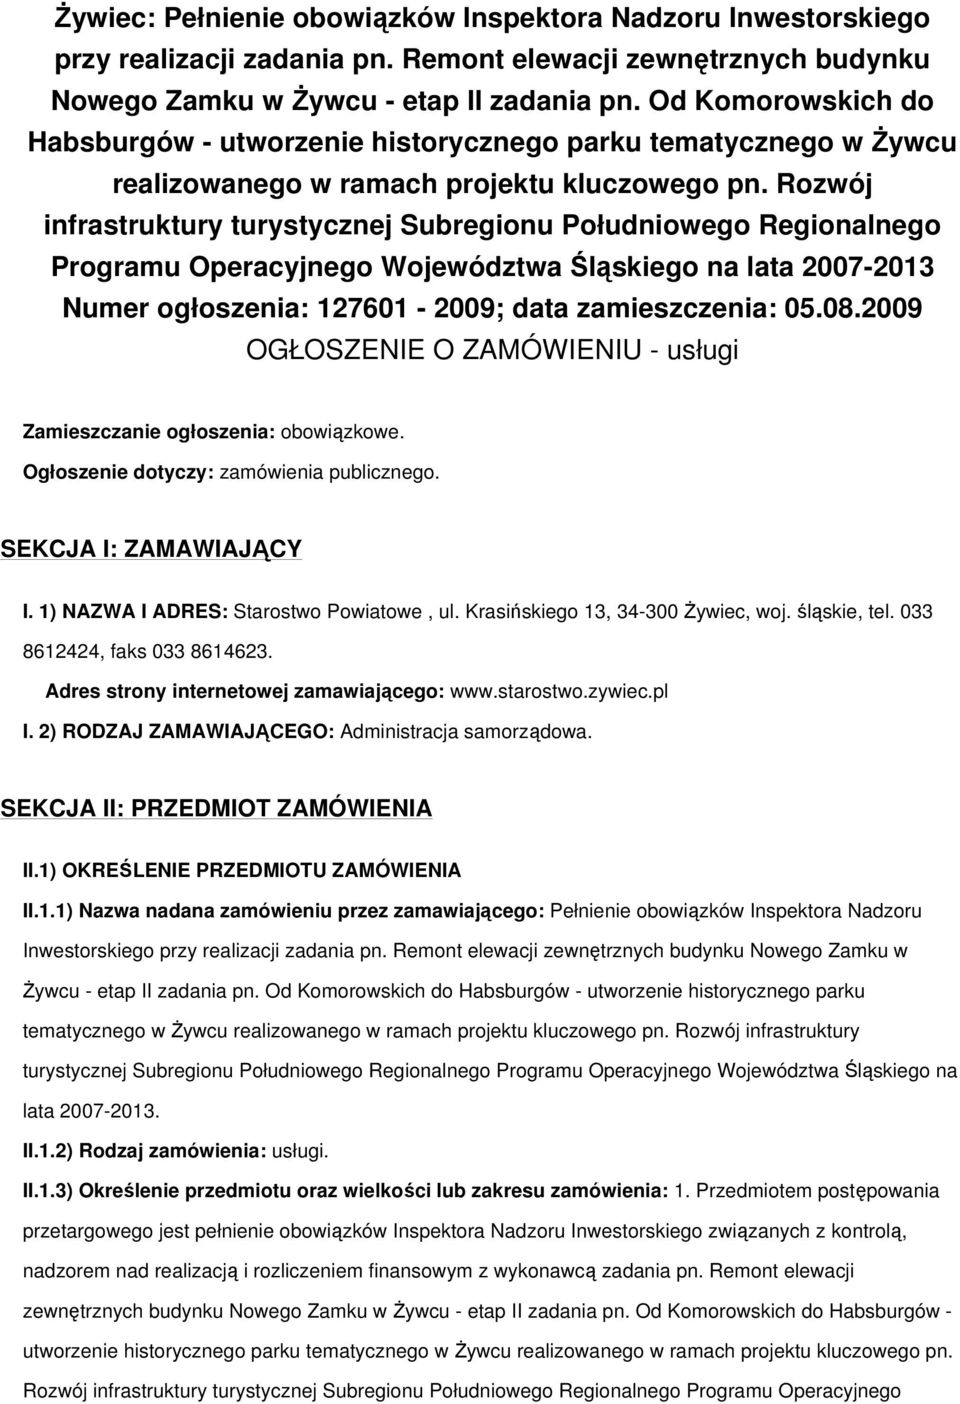 Rozwój infrastruktury turystycznej Subregionu Południowego Regionalnego Programu Operacyjnego Województwa Śląskiego na lata 2007-2013 Numer ogłoszenia: 127601-2009; data zamieszczenia: 05.08.